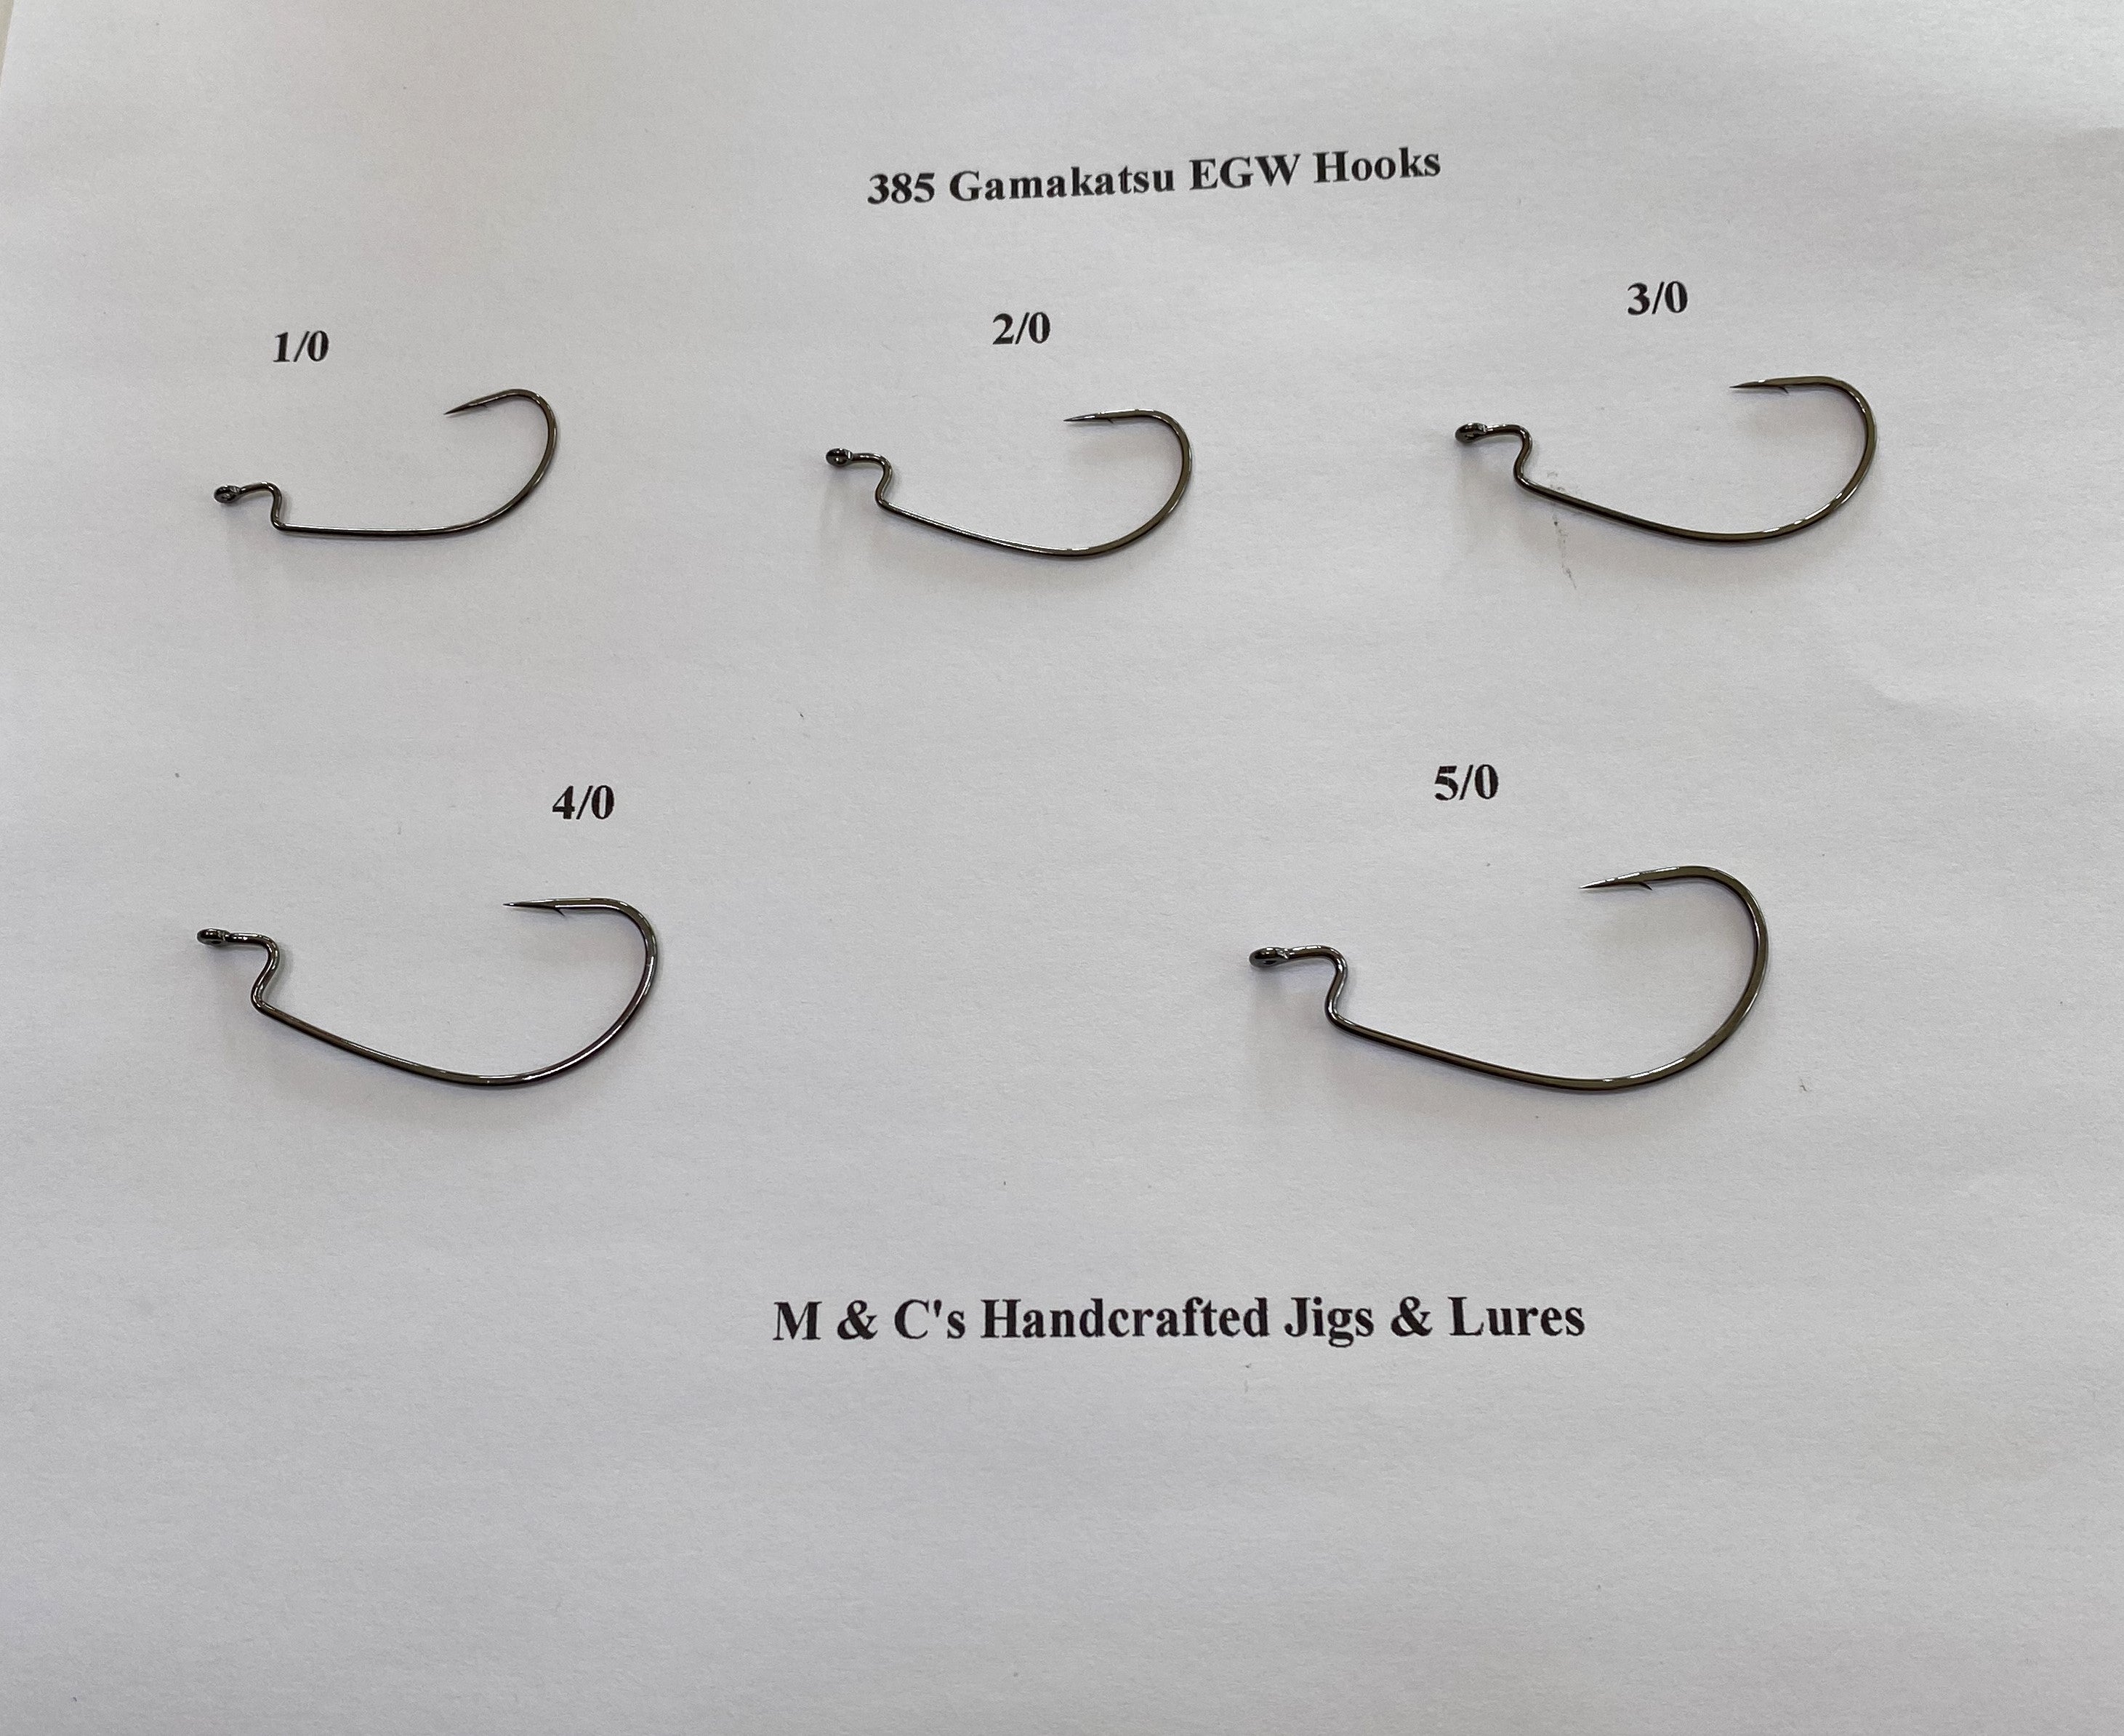 Gamakatsu EWG Hooks 5 sizes 1/0, 2/0, 3/0, 4/0, and 5/0 – M & C's